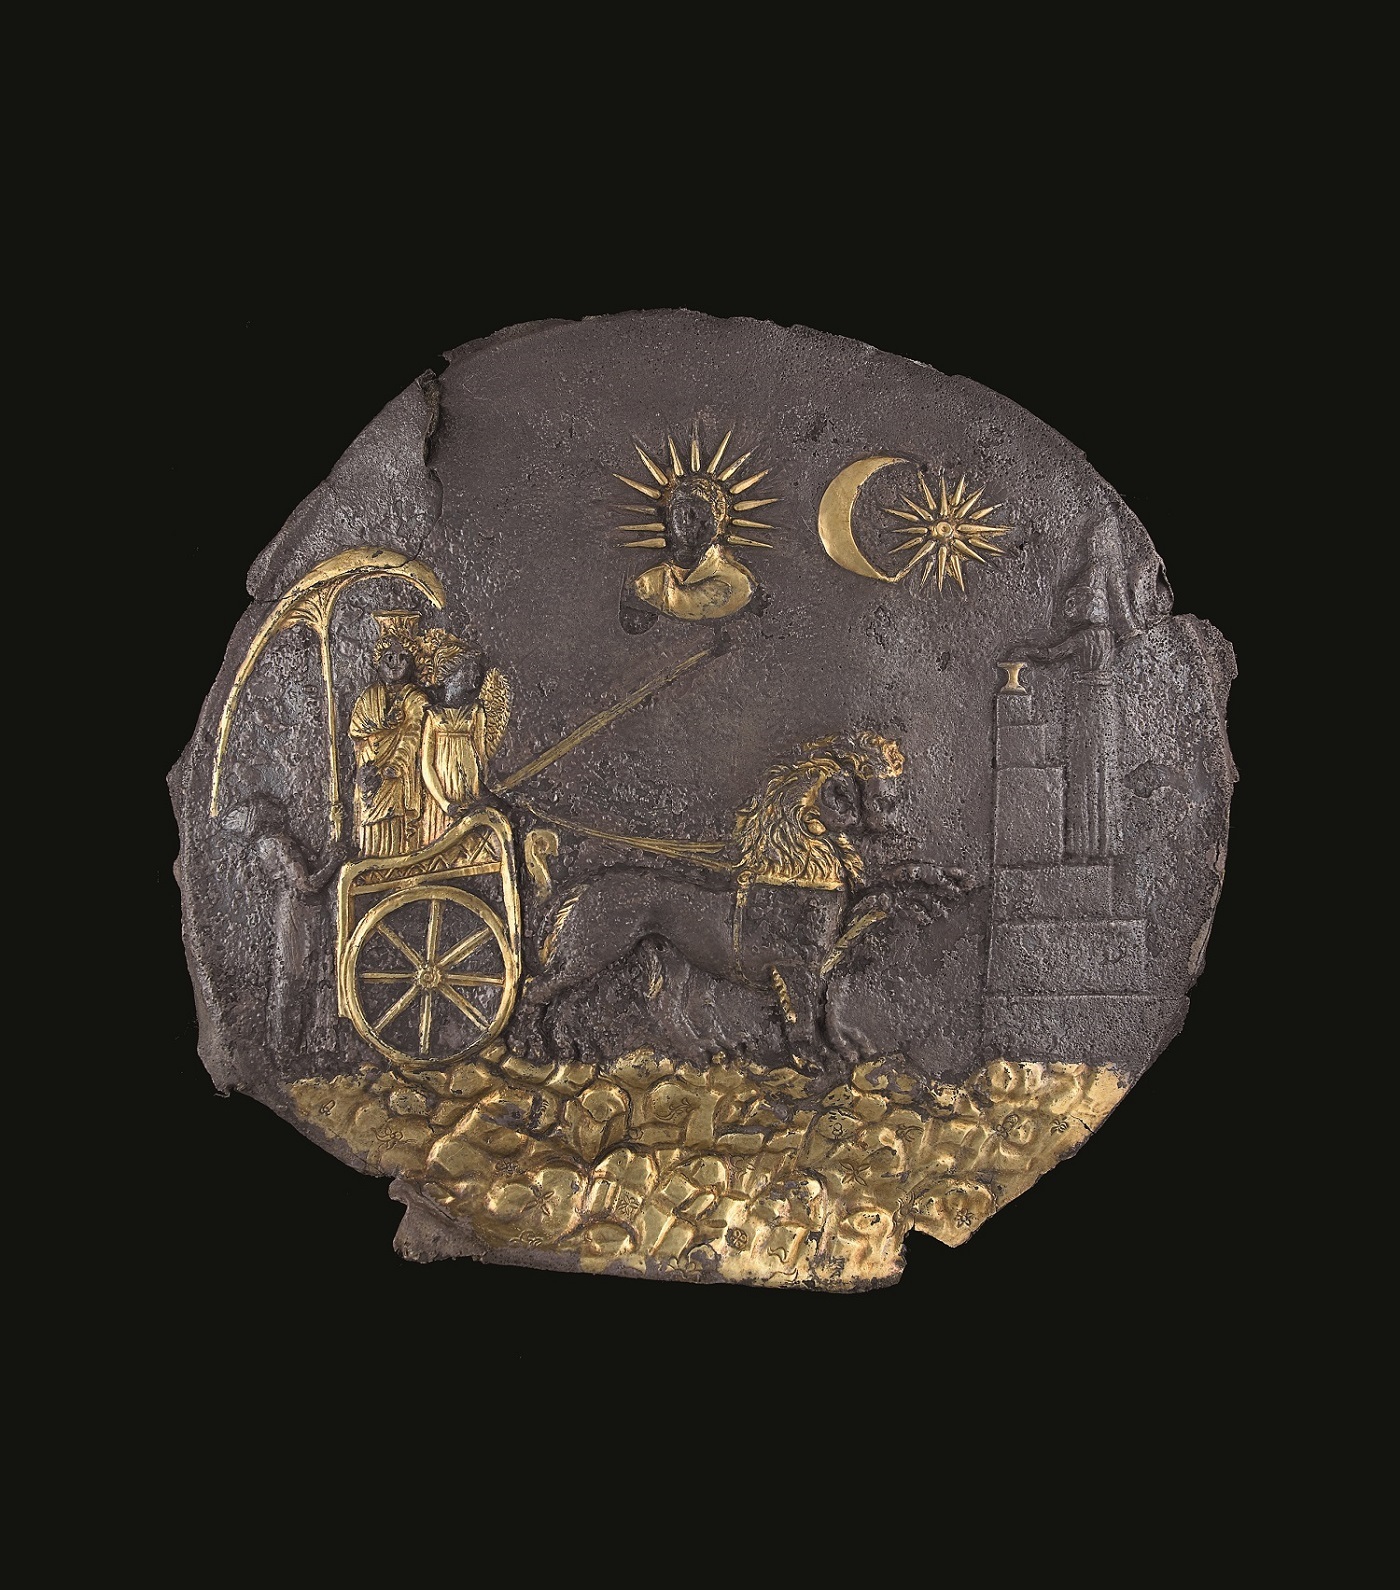 「キュベーレ女神円盤」 前3世紀 アイ・ハヌム出土、素材：銀・鍍金　所蔵元：アフガニスタン国立博物館蔵